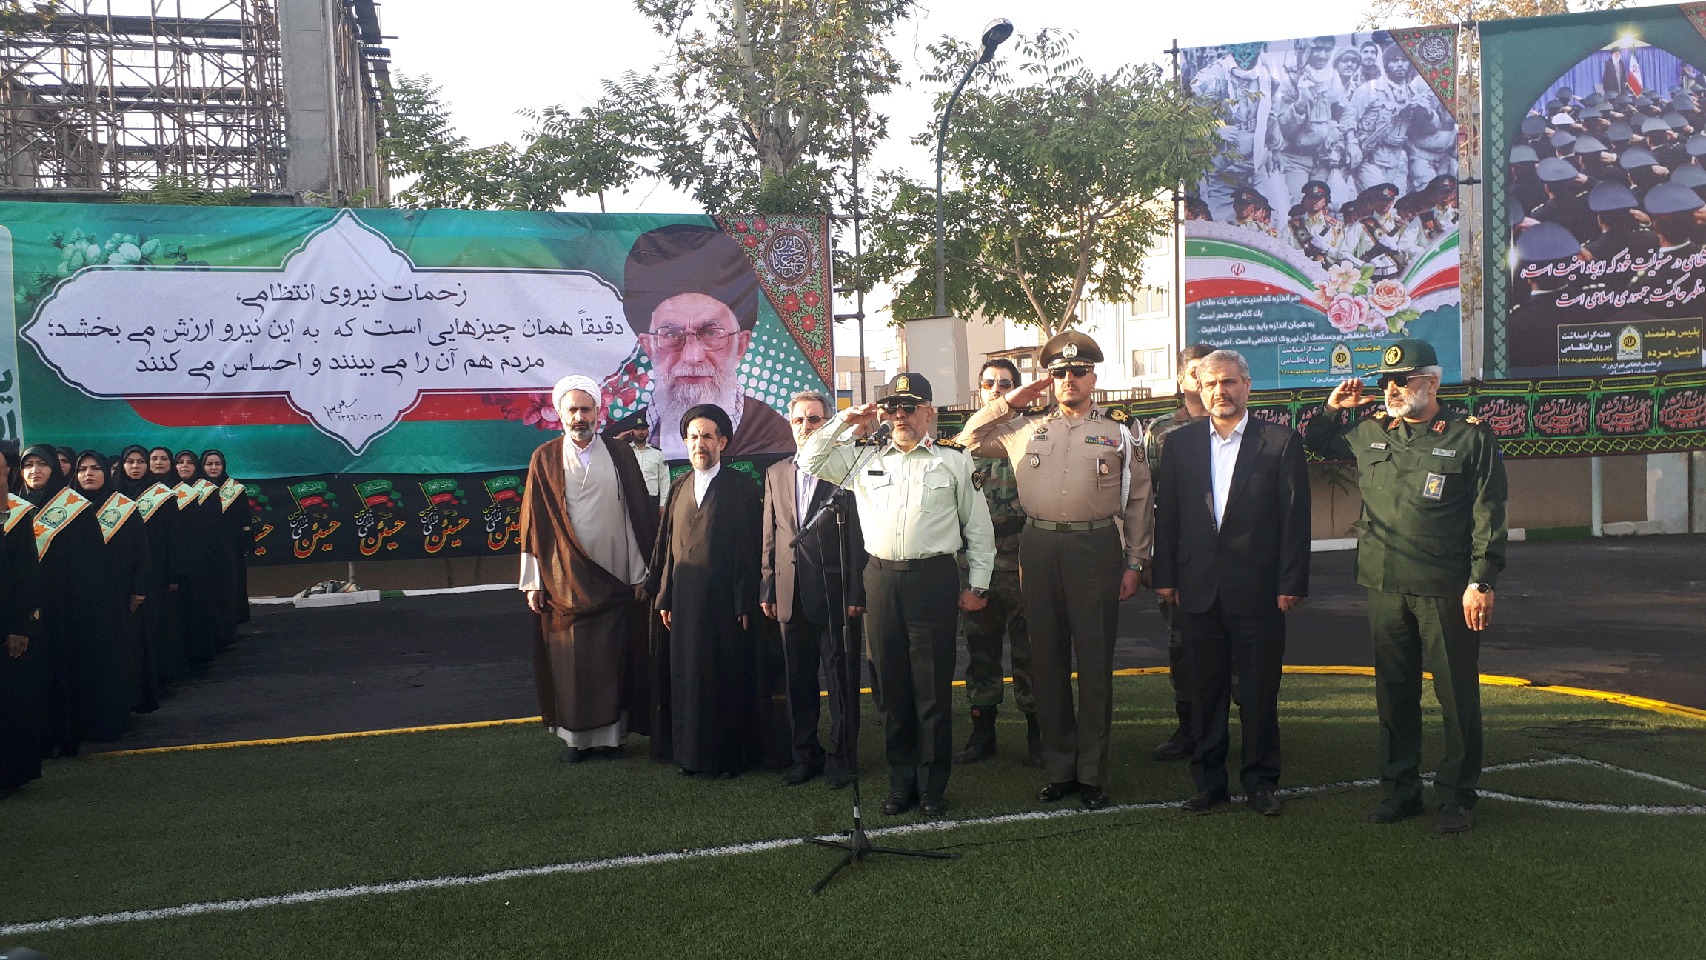 صبحگاه مشترک نیروهای مسلح در فرماندهی انتظامی تهران بزرگ برگزار شد